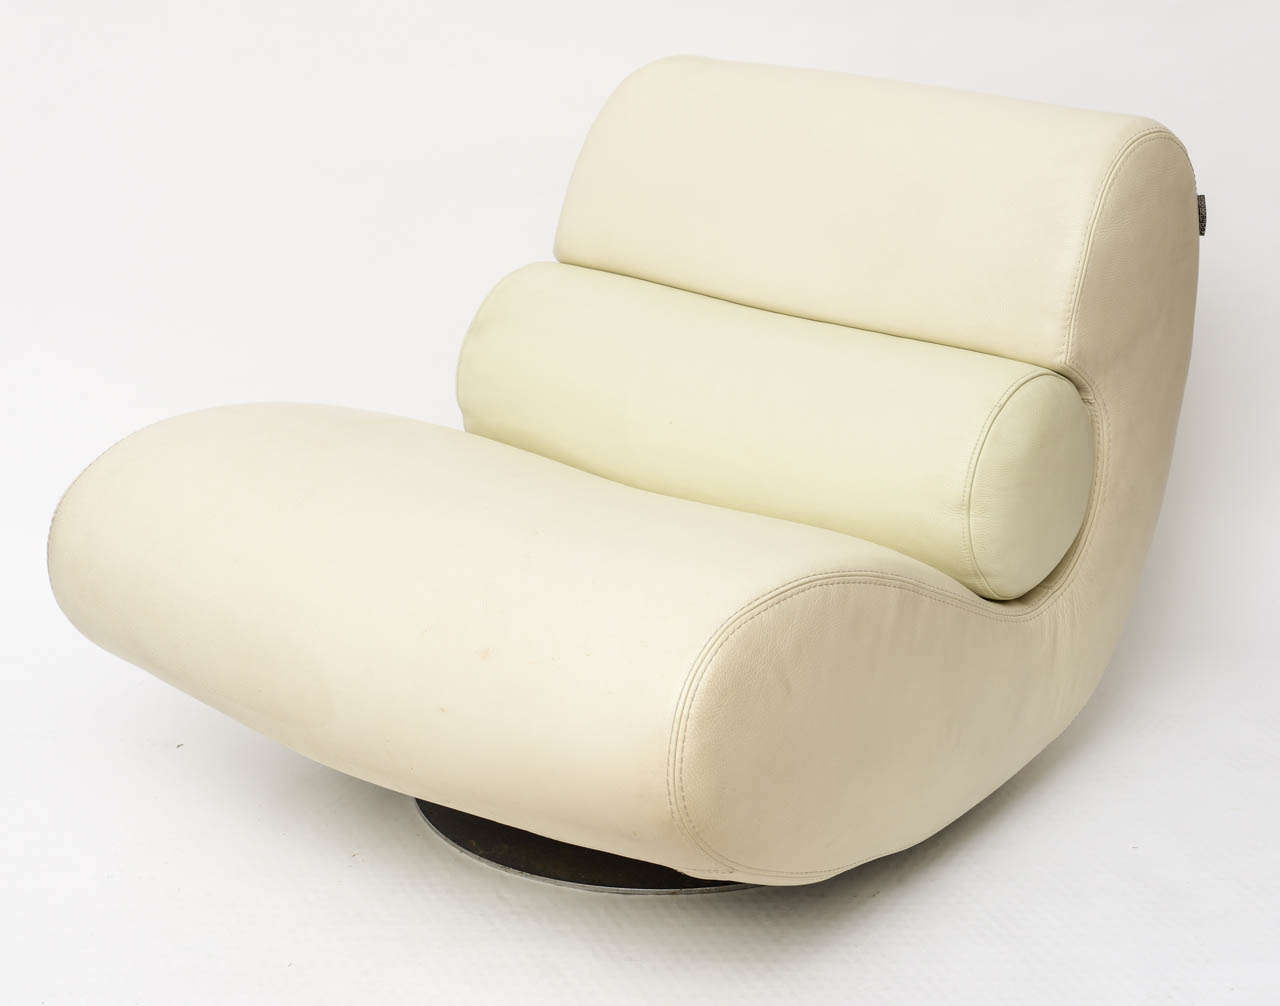 Swiss Lounge Seat by Roche Bobois